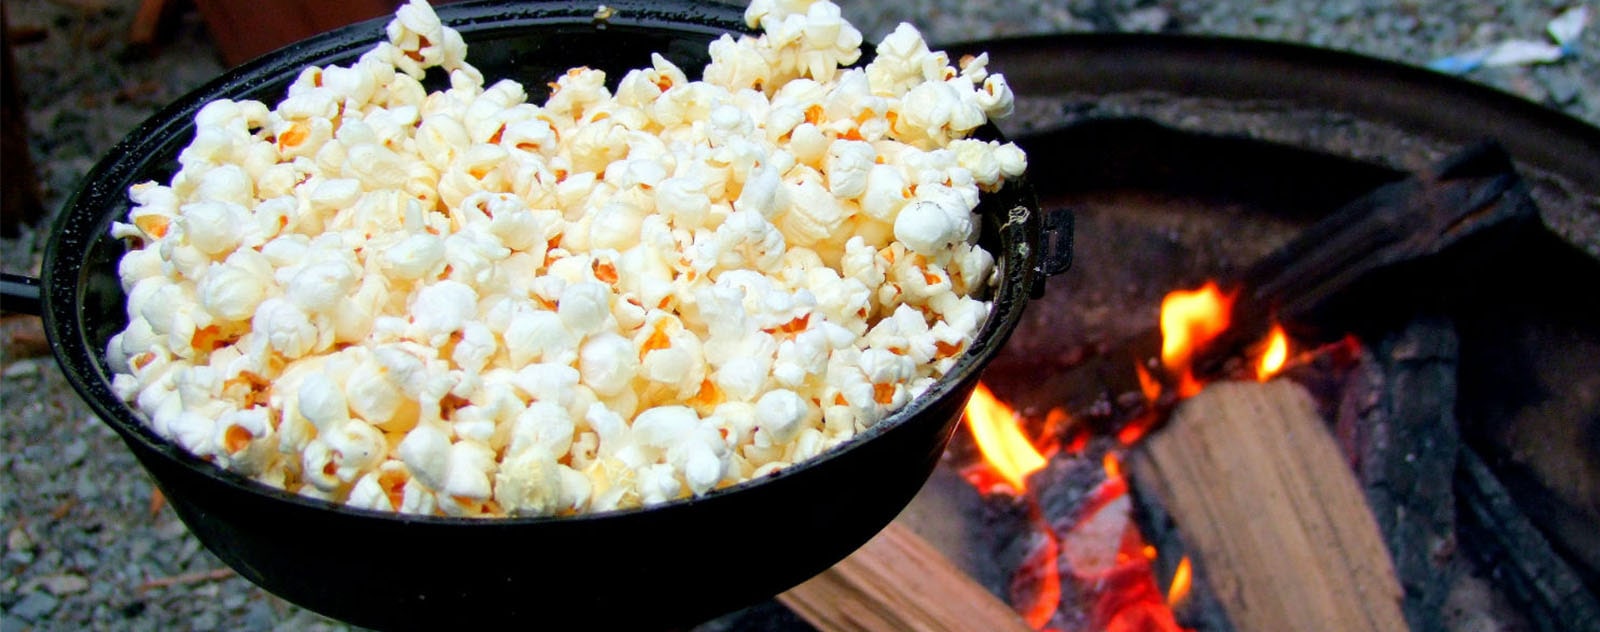 Popcorn feu de camps